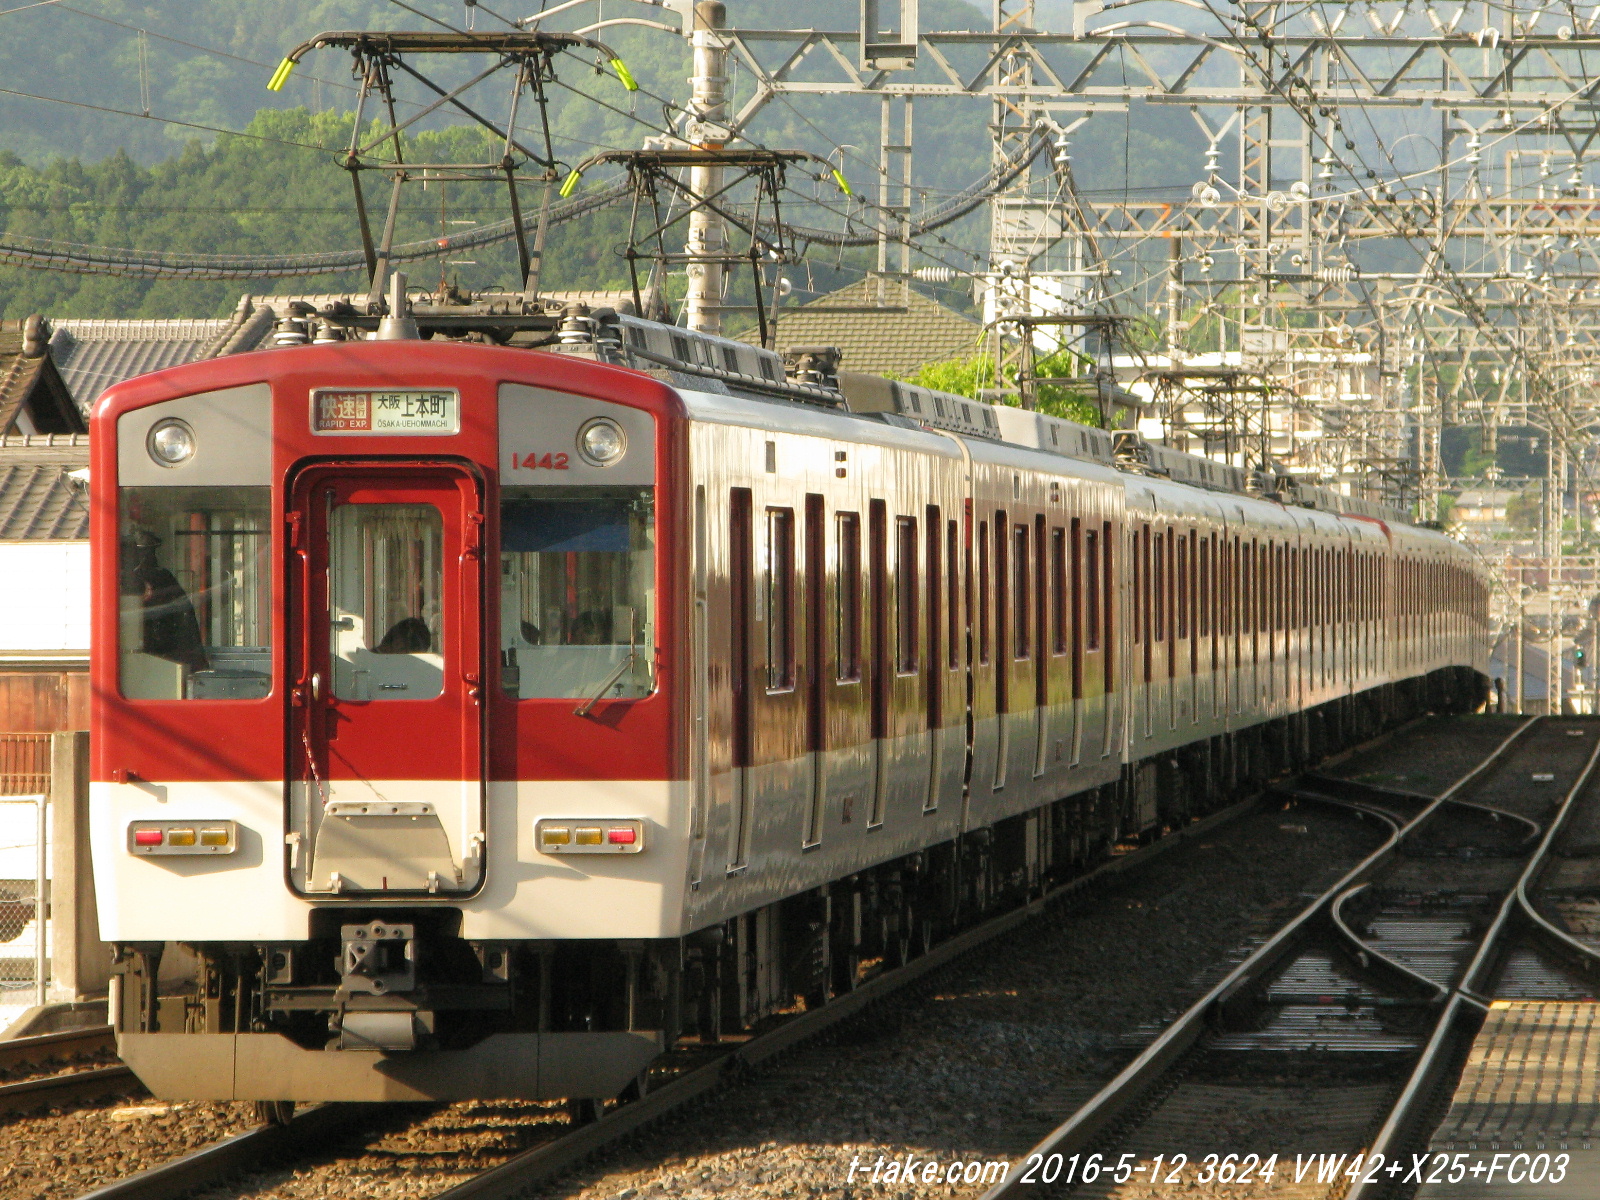 平日奈良線系統からの「近鉄運用、暫定運用表掲載」について : 列車